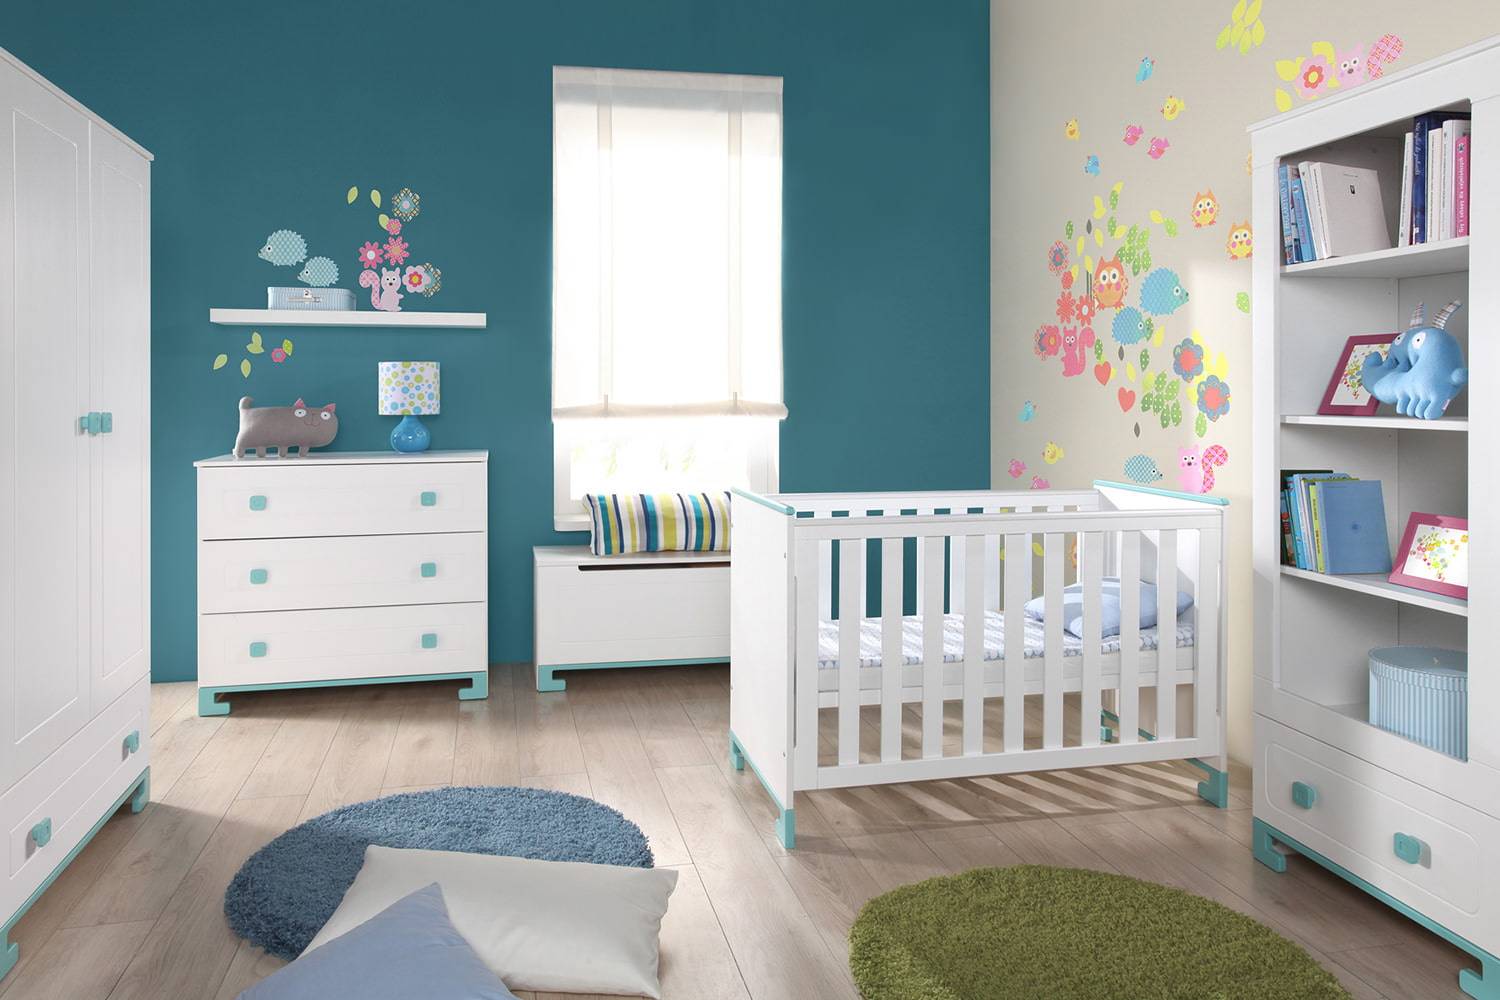 Цвет стен в детской комнате: как определить подходящую палитру